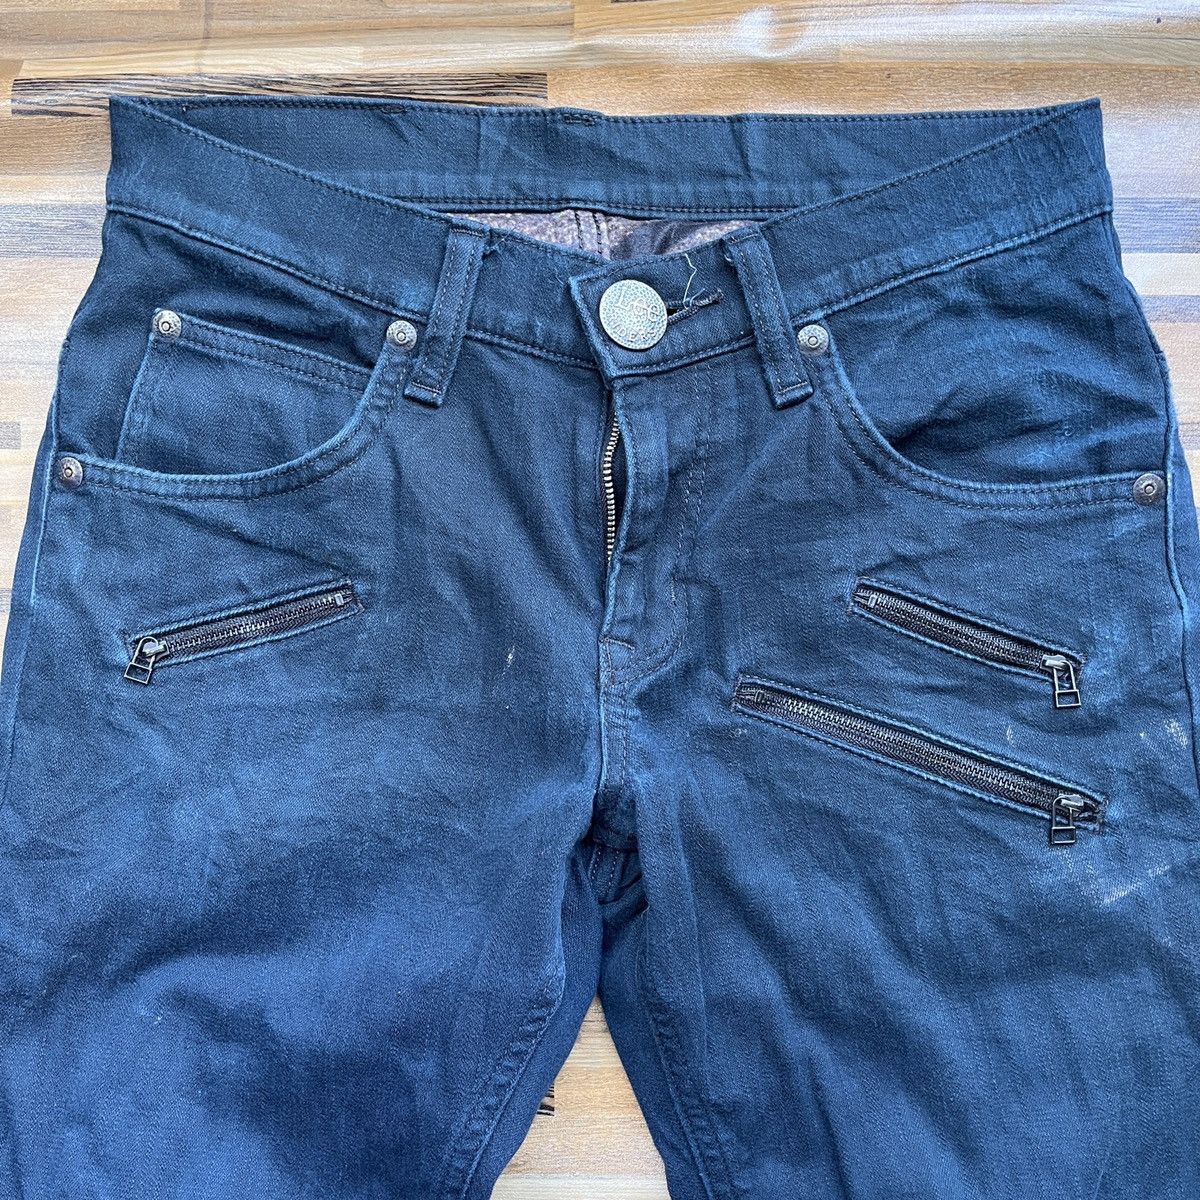 Multipocket Lee Rider Denim Jeans Vintage - 5